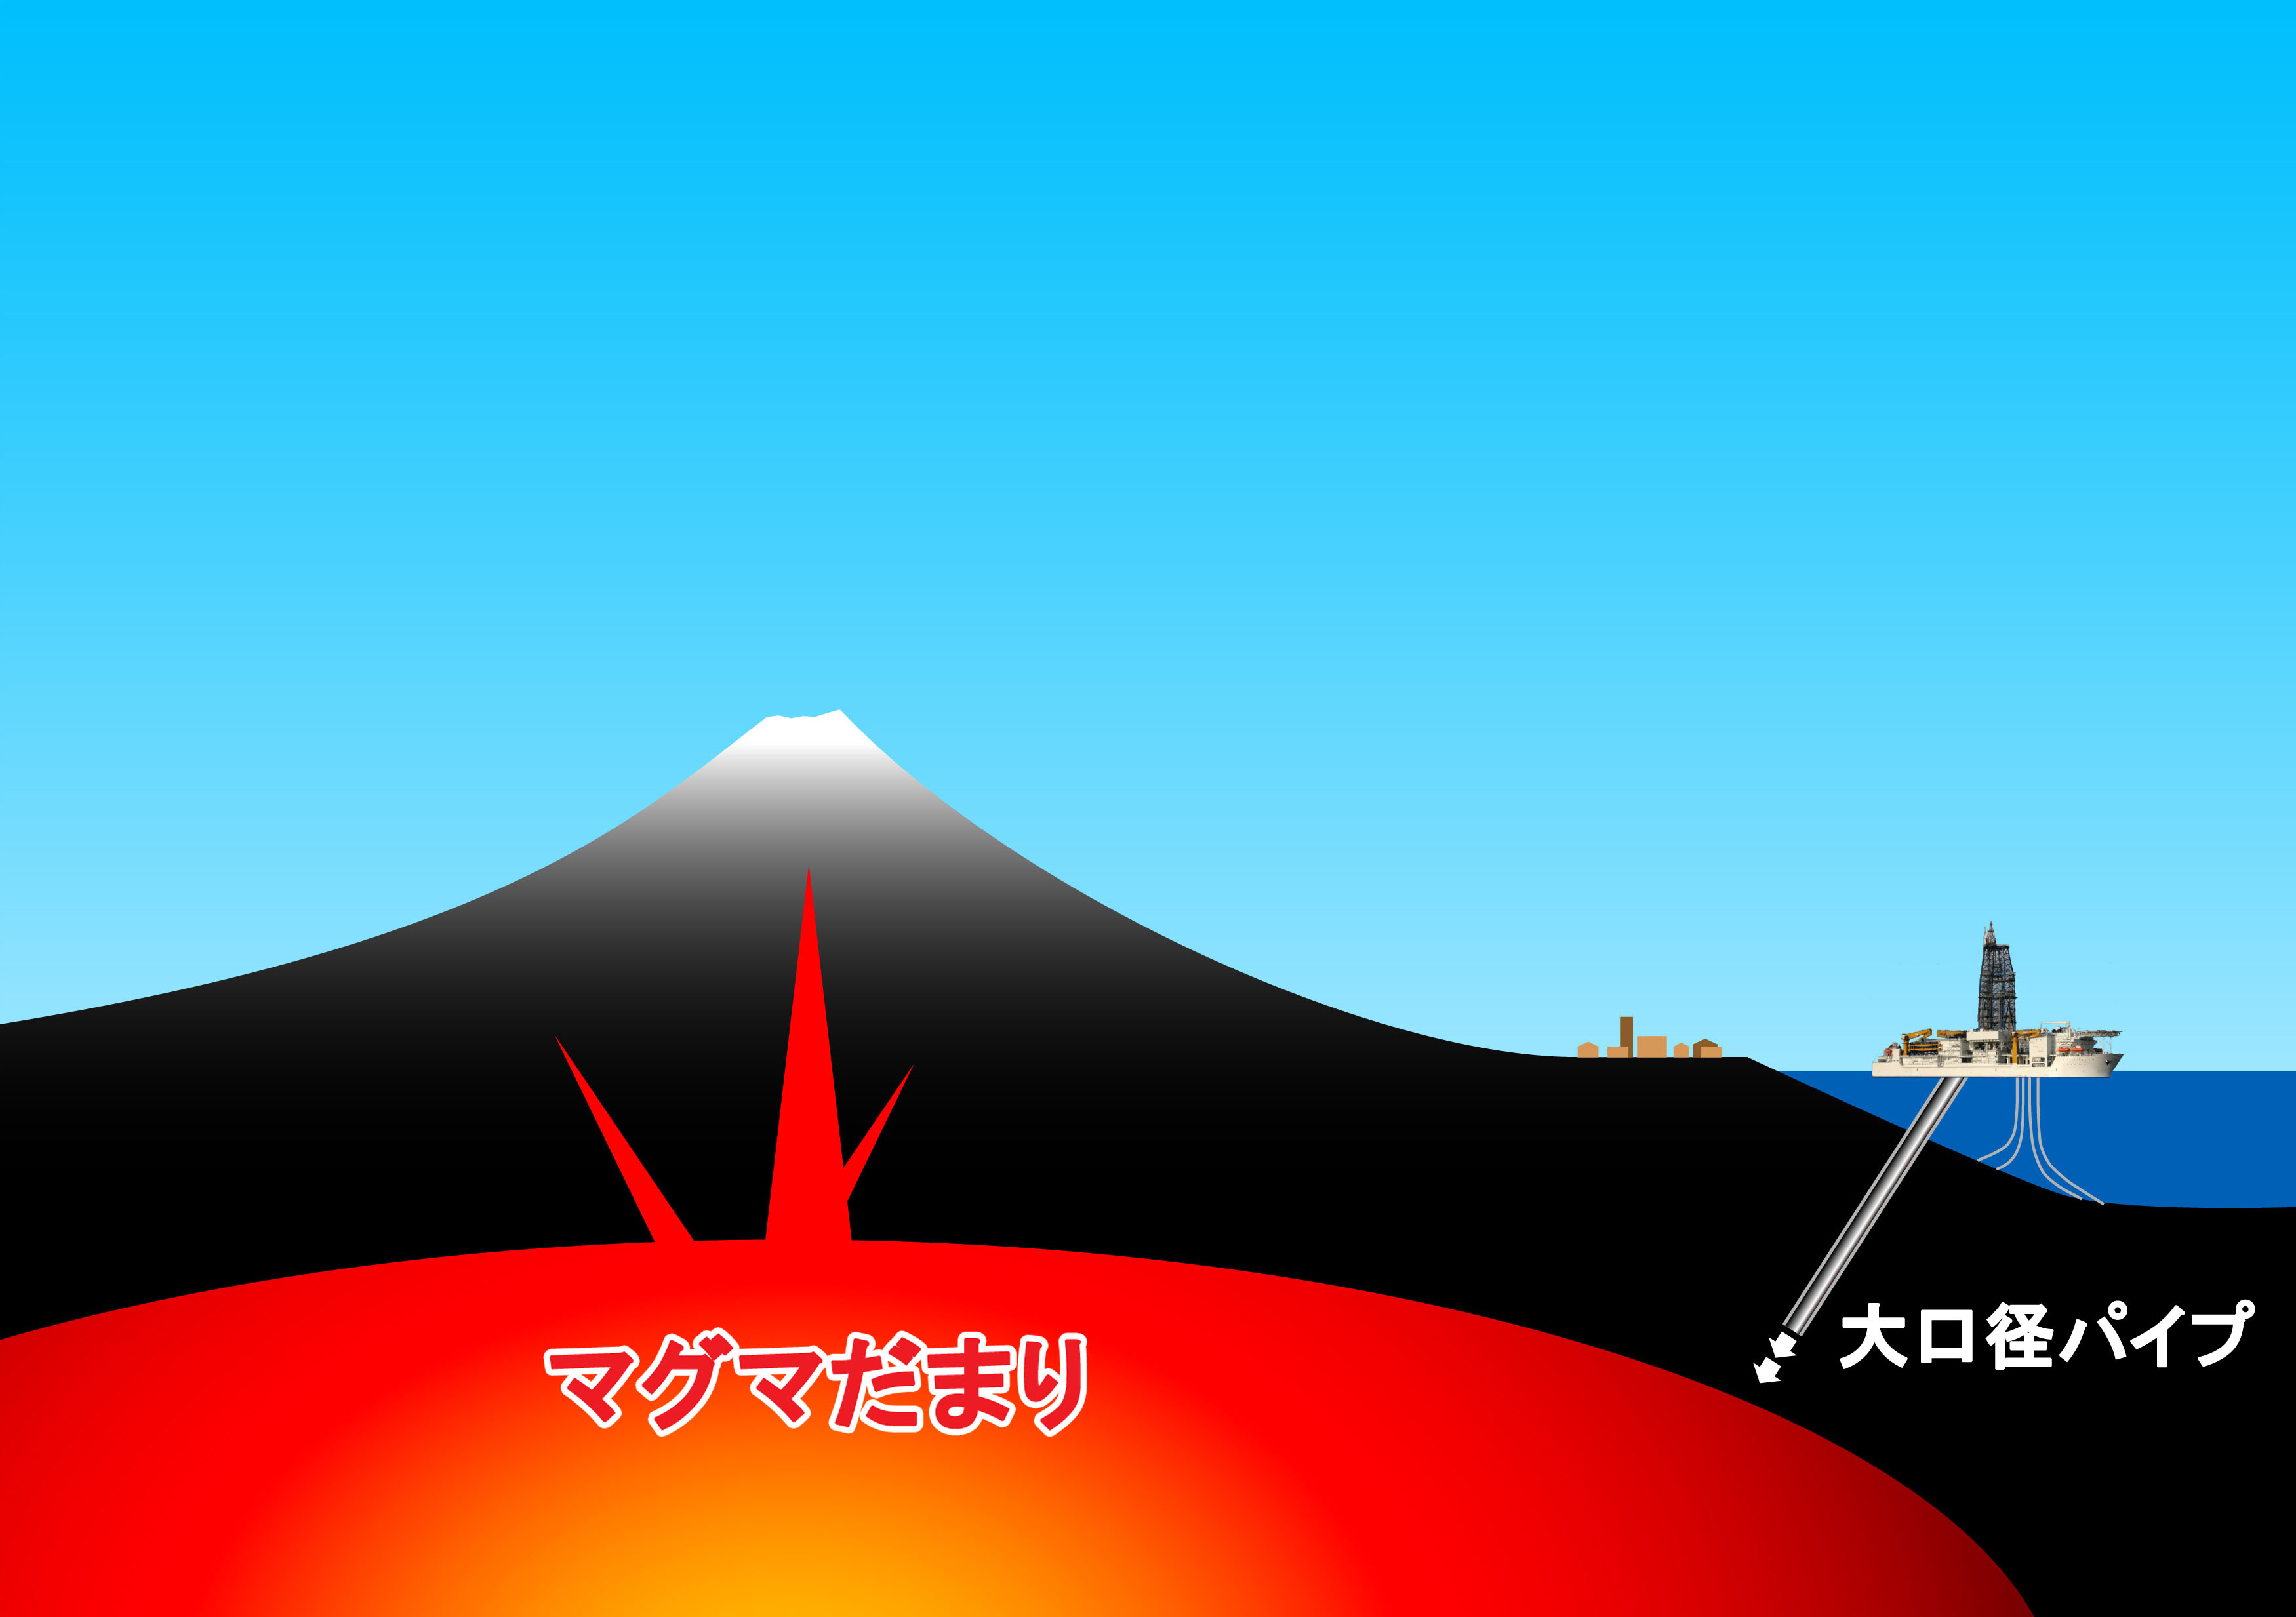 フジワラ産業 Fm式マグマ抜き工法 の開発を検討 日本の象徴 美しい富士山の噴火予防対策としてー フジワラ産業株式会社のプレスリリース